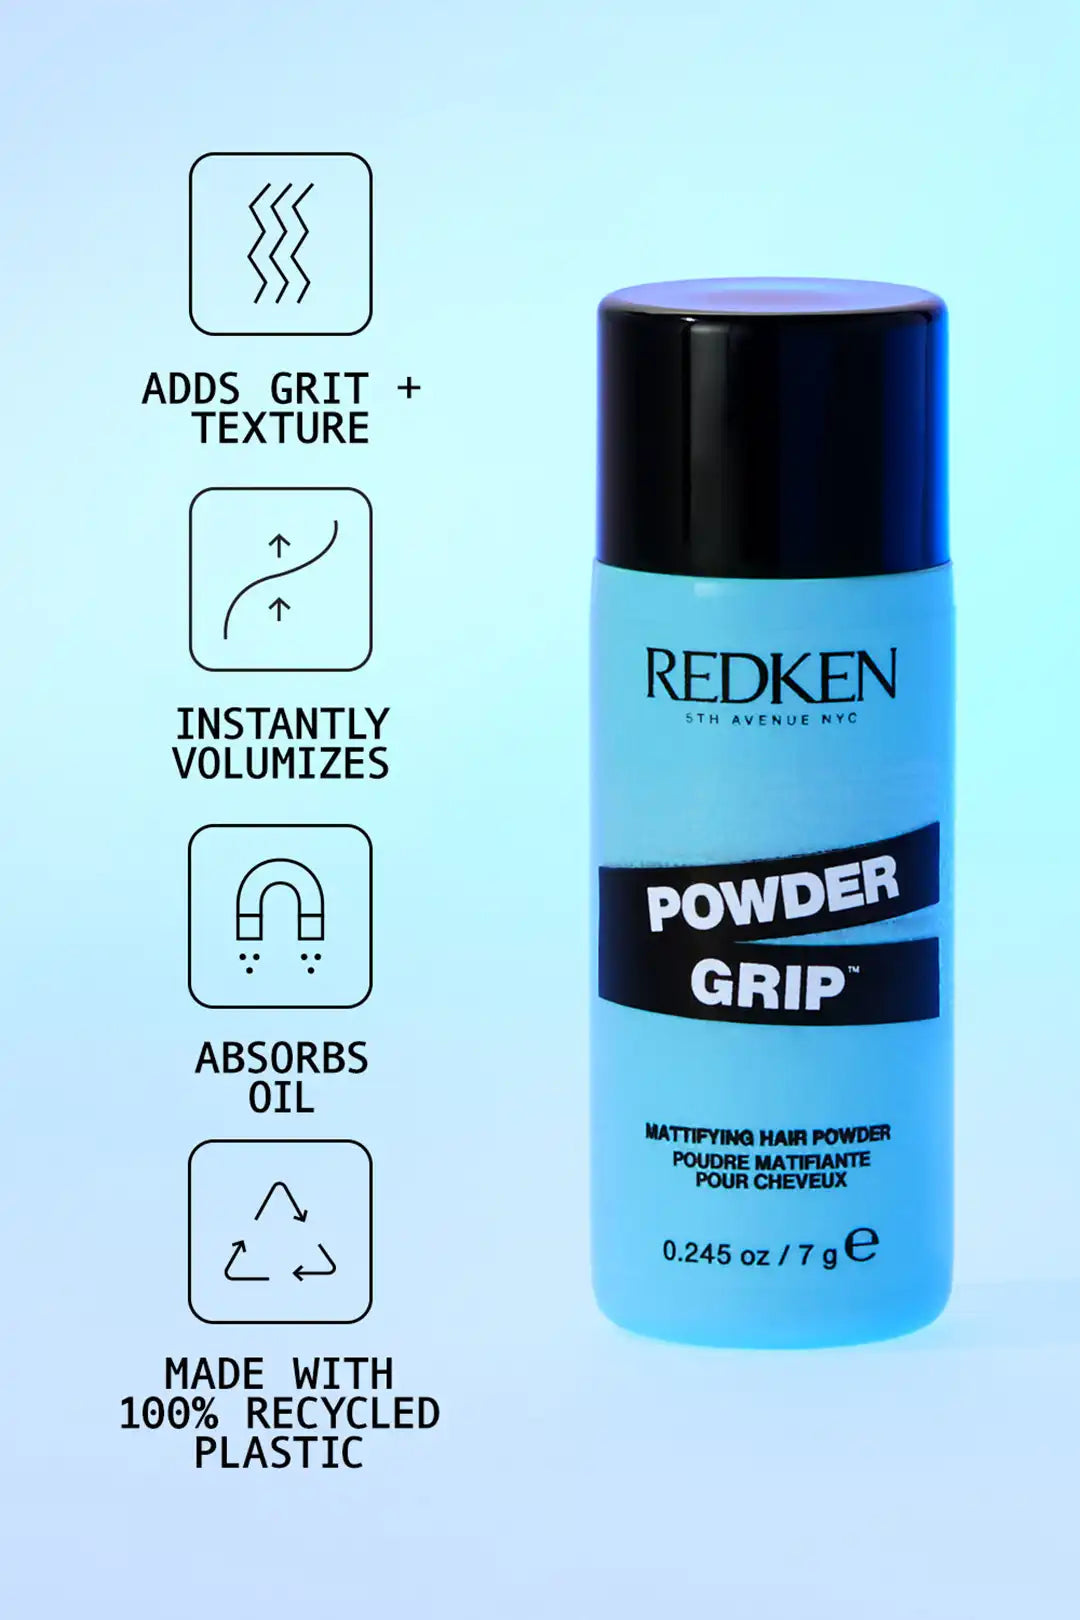 Redken Powder Grip Mattifying Hair Powder 03, 7g